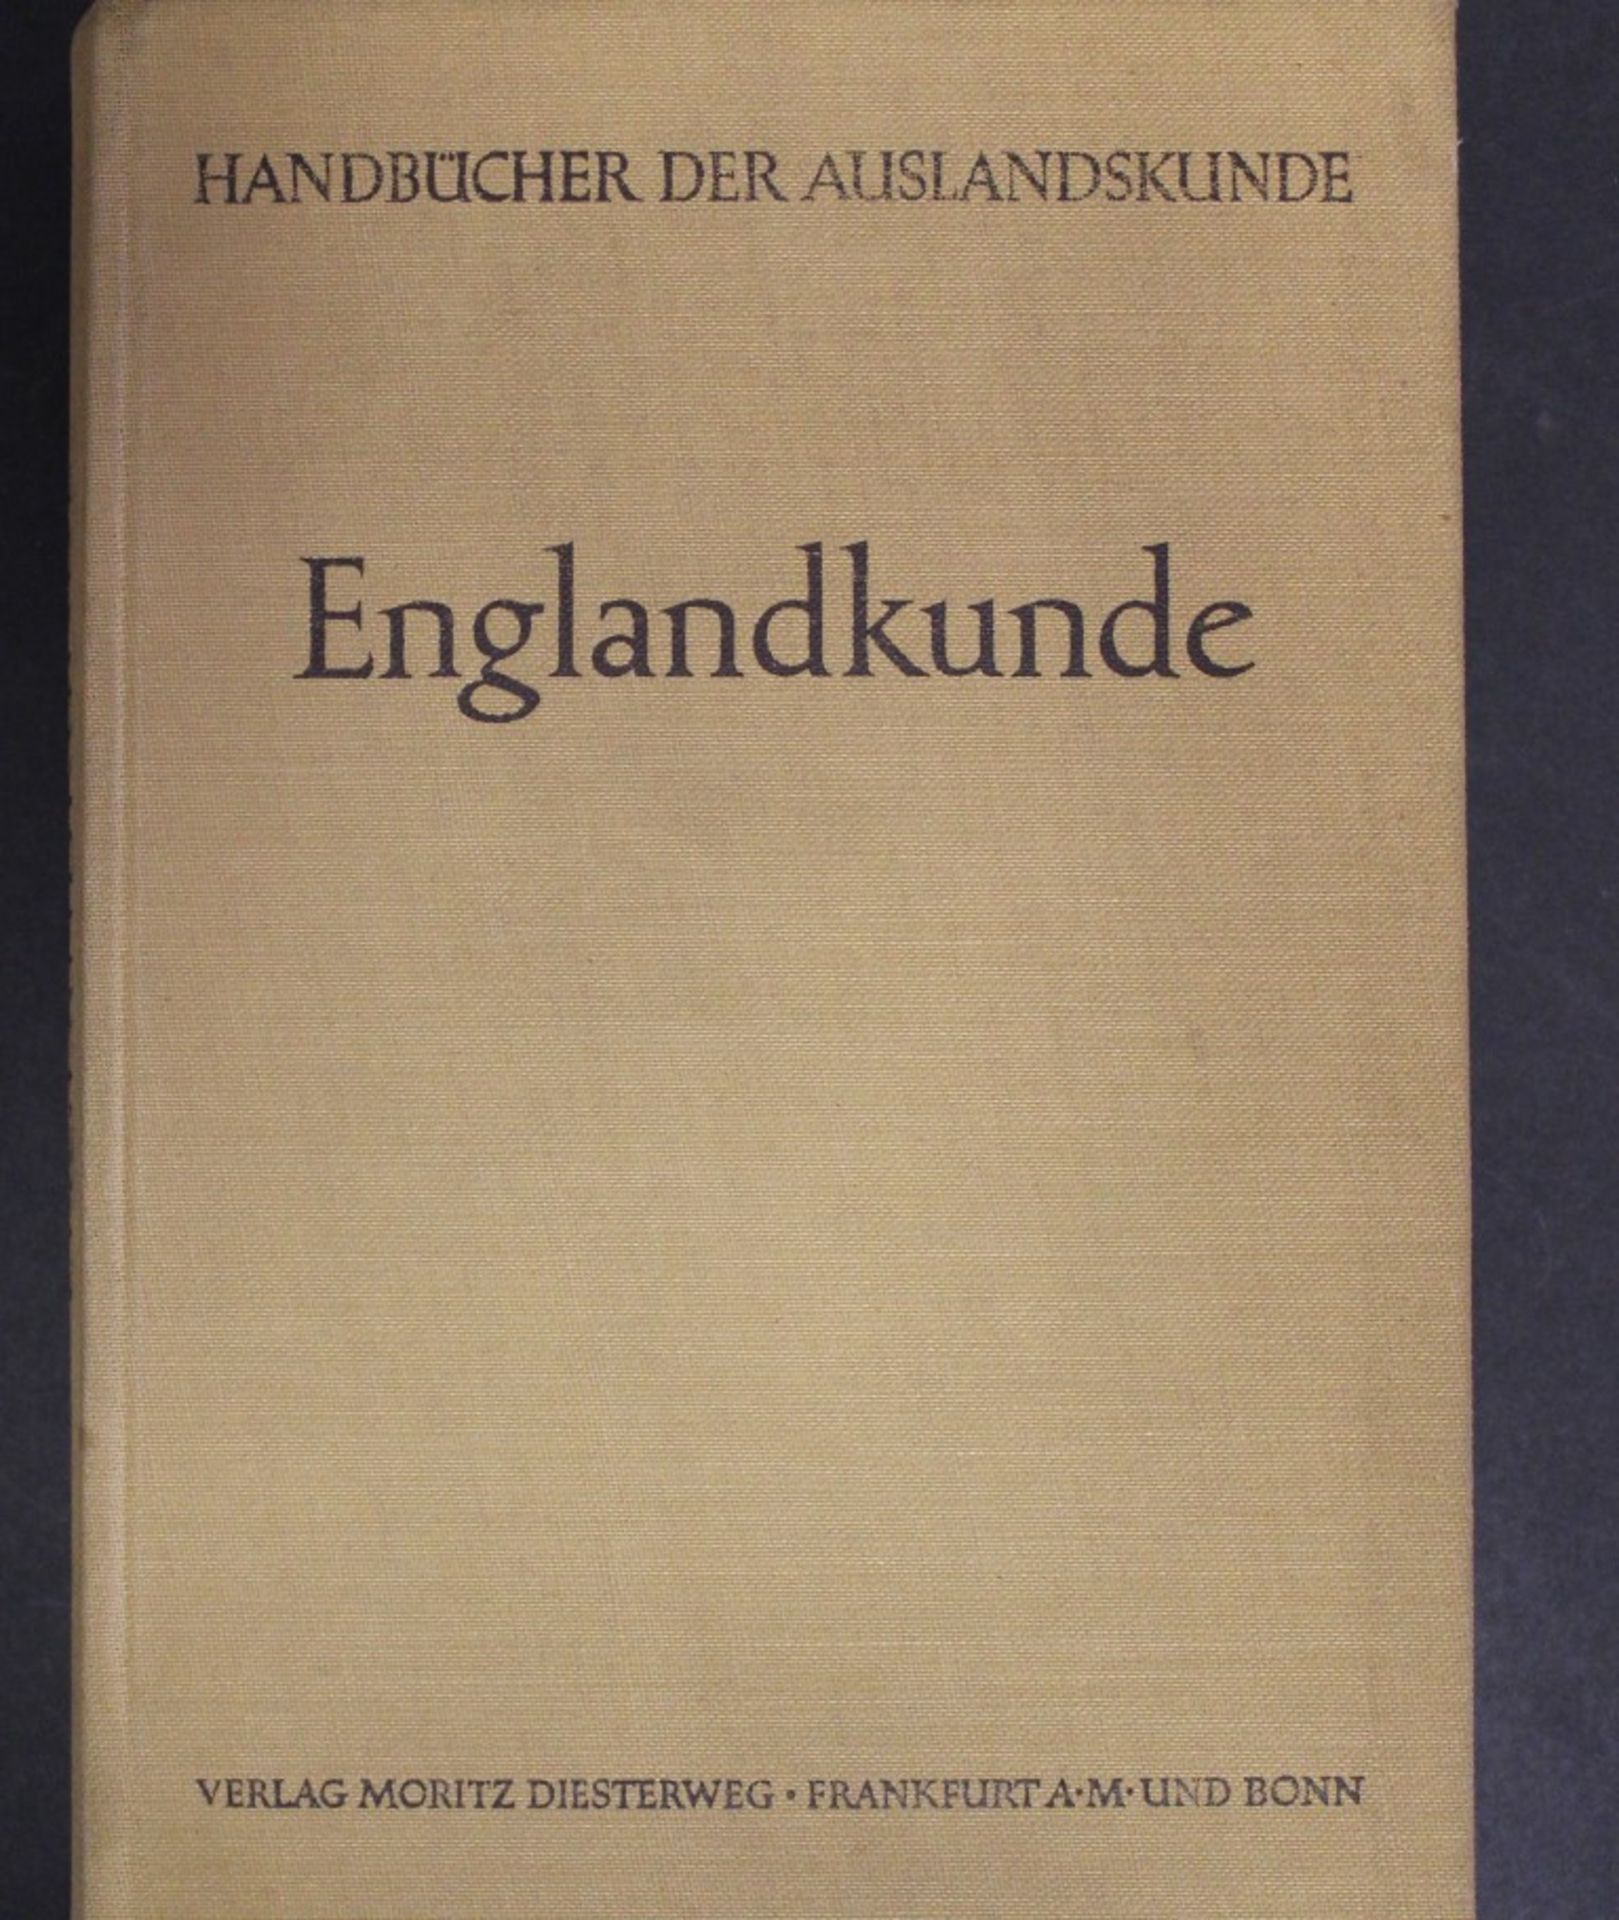 Englandkunde, Dritte Auflage, Herausgeg. Dr. Paul Hartig, 1955, Handbücher der Auslandskunde,